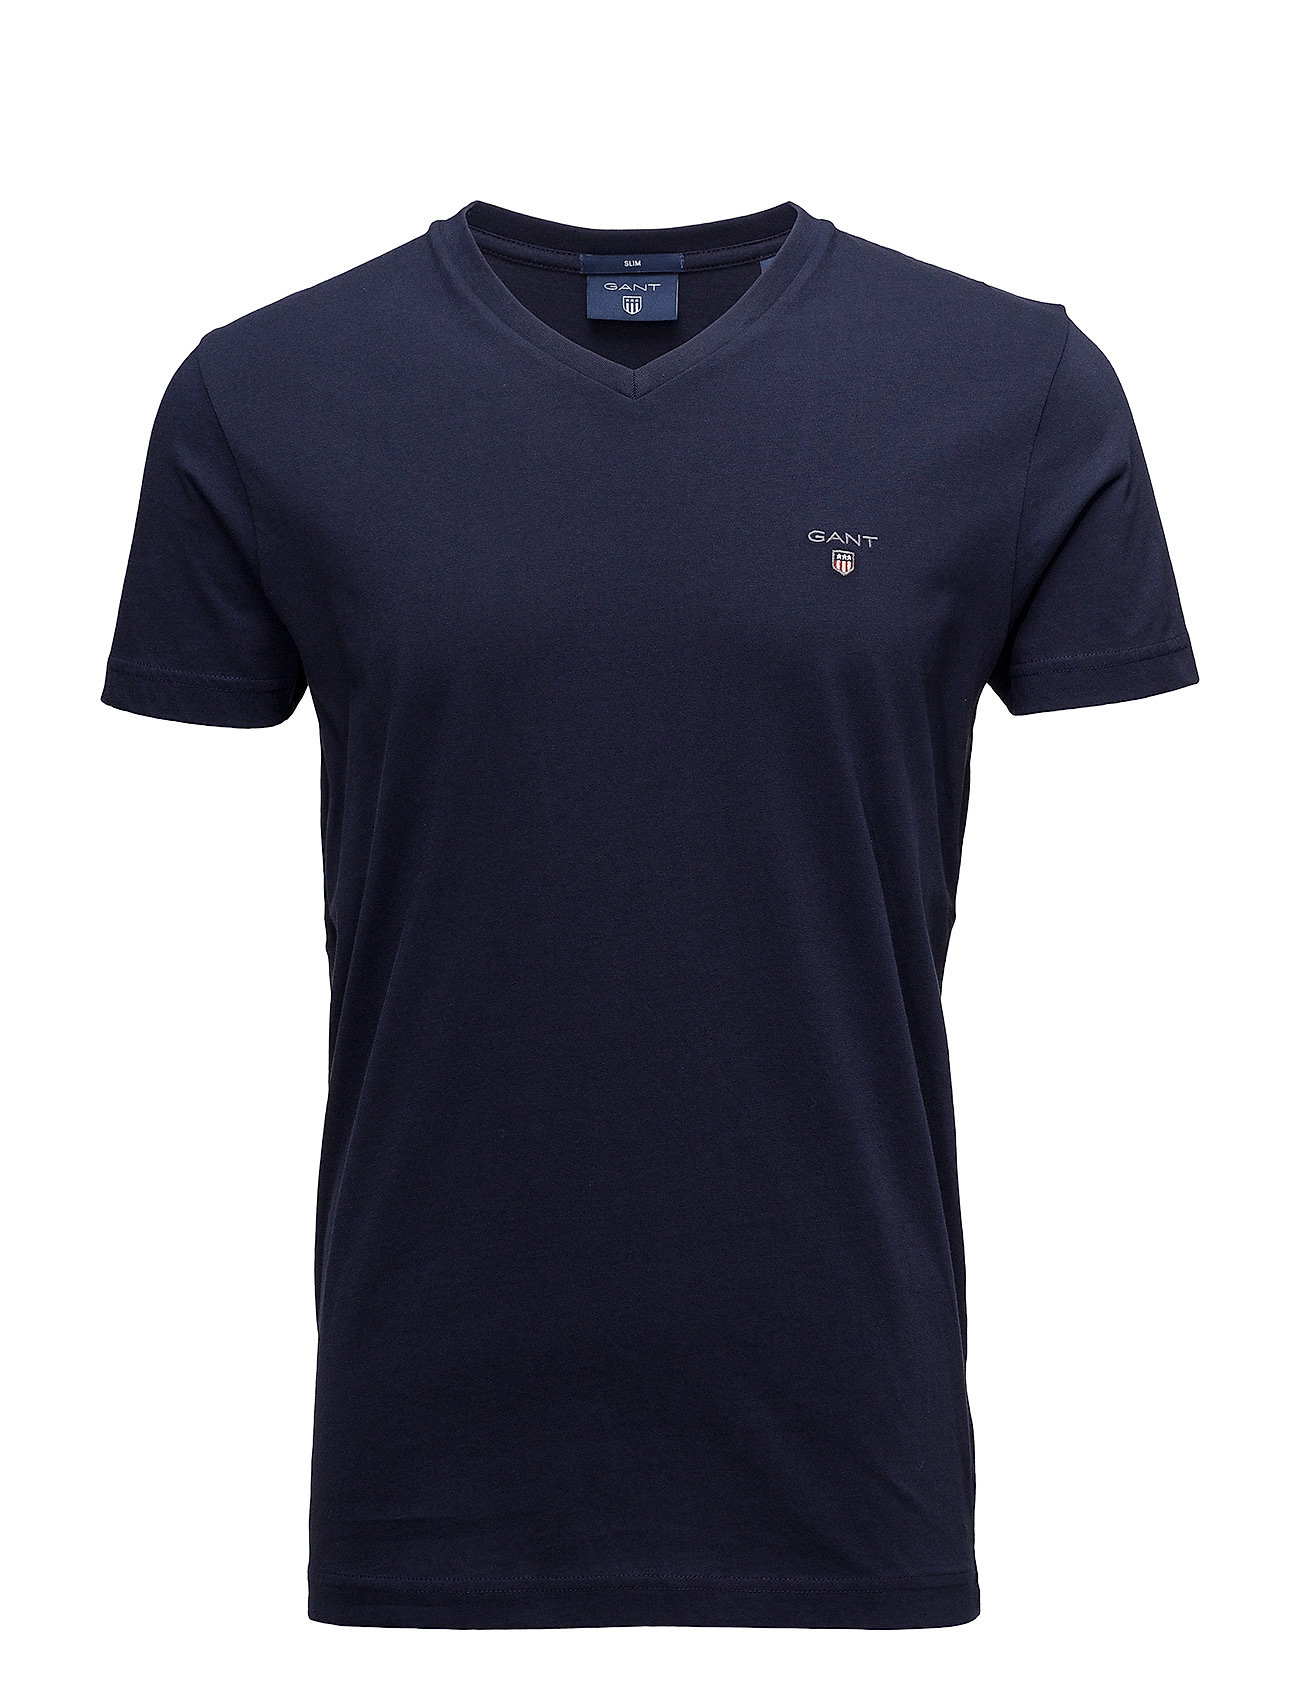 GANT Original Slim V-neck T-shirt (Evening Blue) - 450 kr | Boozt.com